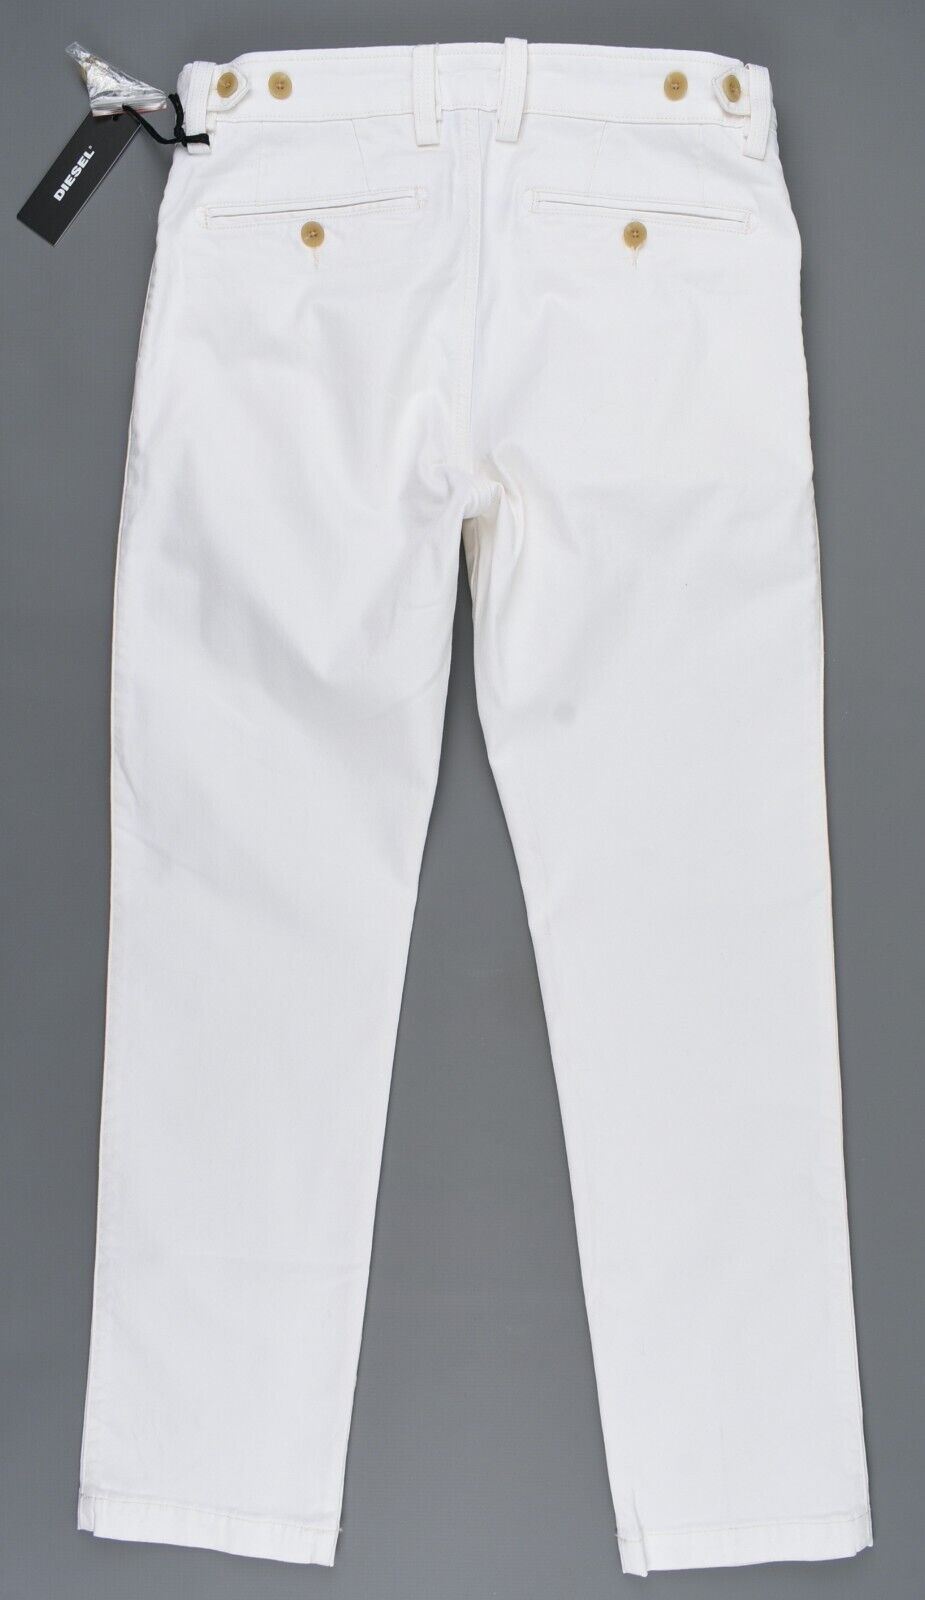 DIESEL Men's CHI-BREED Denim Jeans Pants, Ecru, size W29